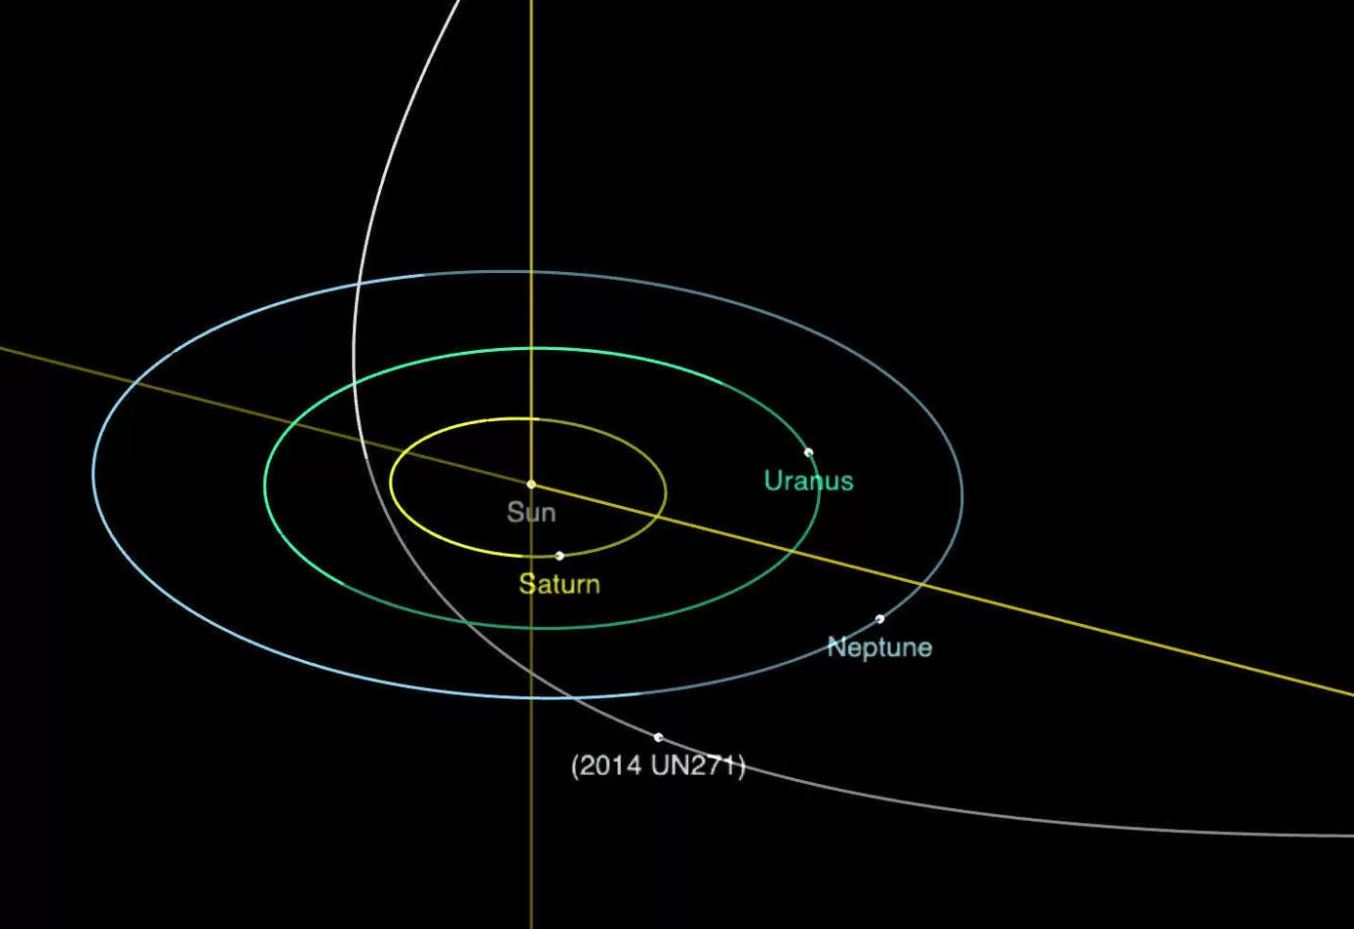 2014 UN271 kuyruklu yıldızı Güneş'ten 22 Astronomik Birim (AU) uzaklıktadır ve Dünya'ya doğru yaklaşıyor.